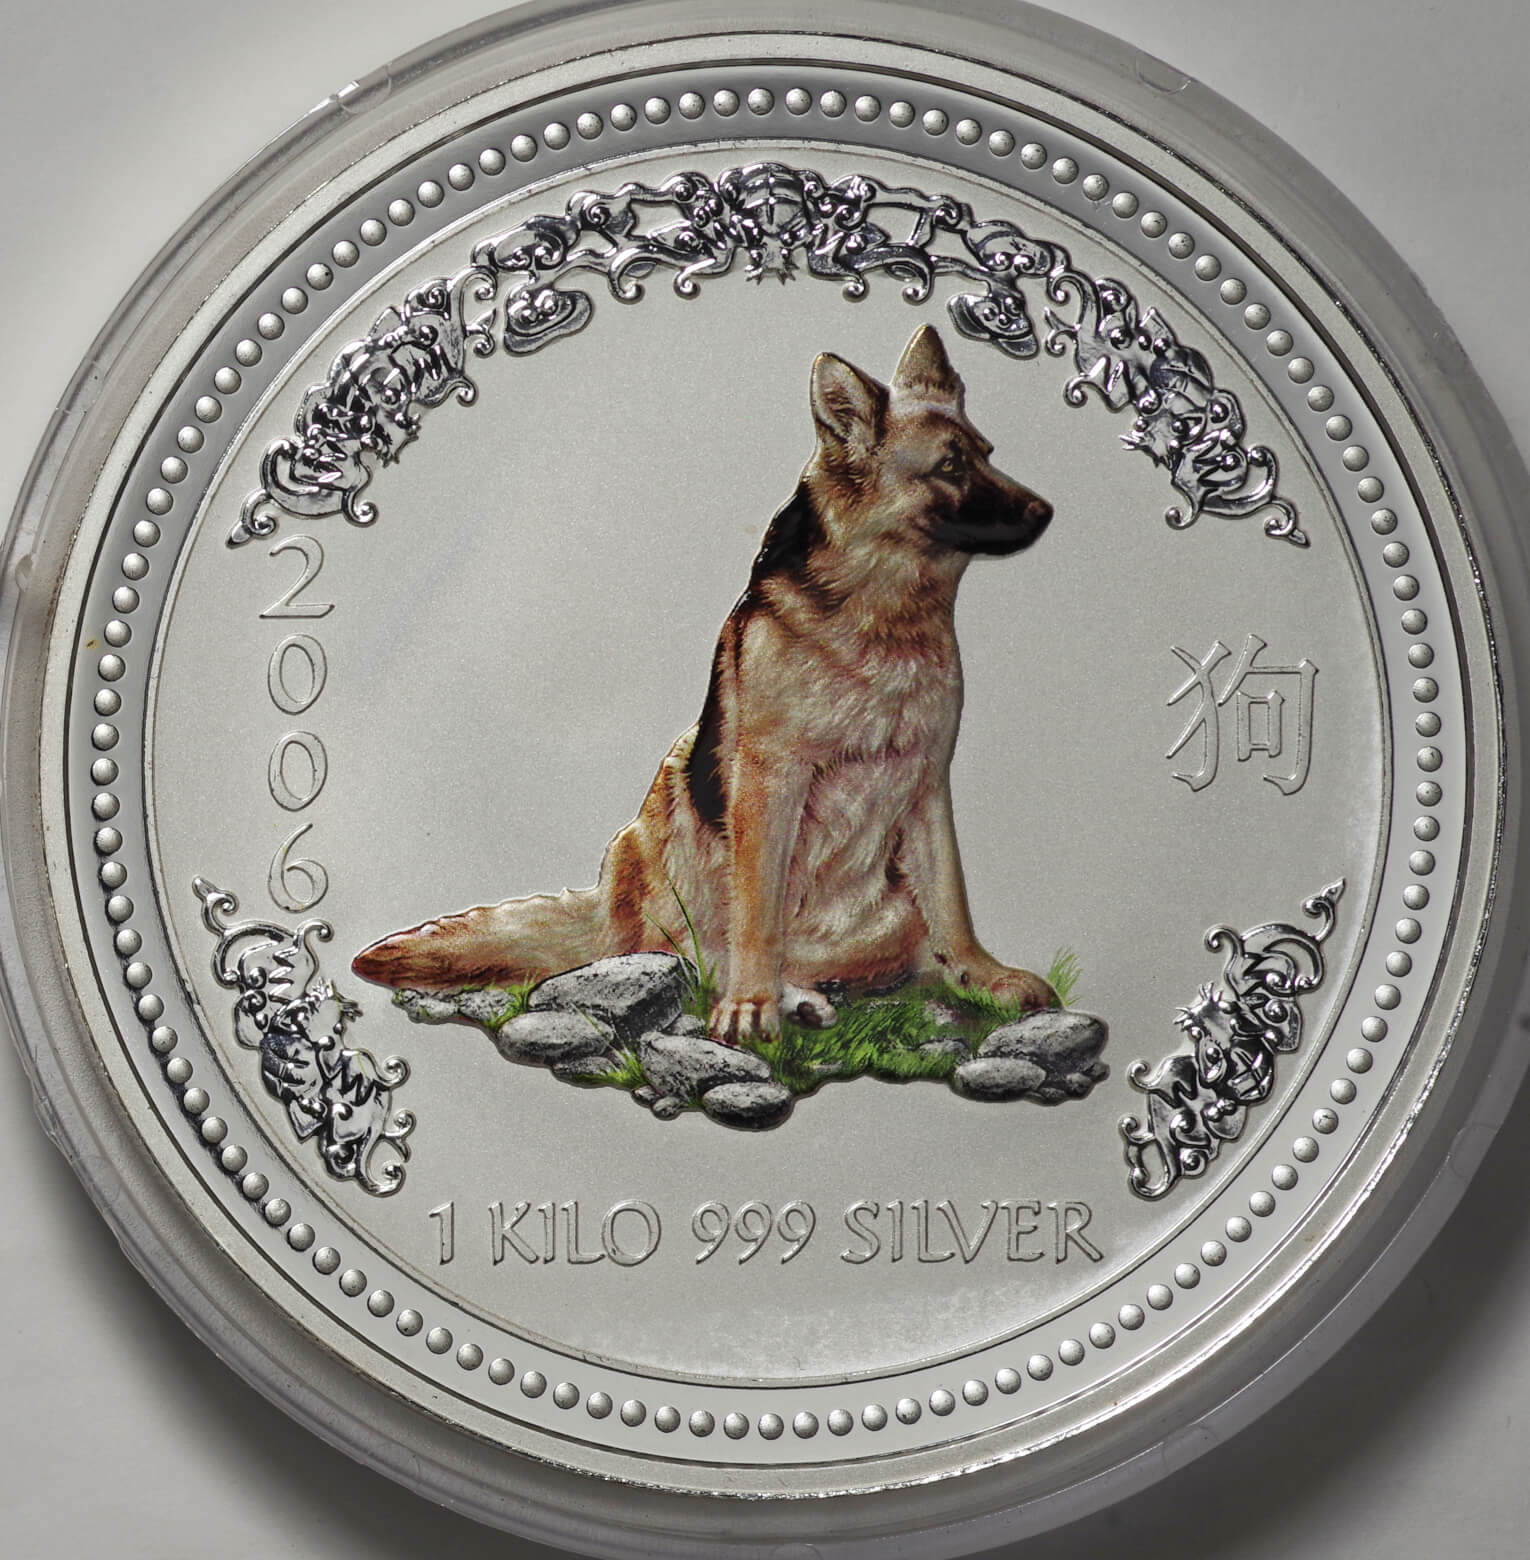 オーストラリア 銀貨 2006年 干支 丙戌 犬 シルバー999 純銀 カラー コイン 5 Oz/5 オンス 5ドル - 貨幣